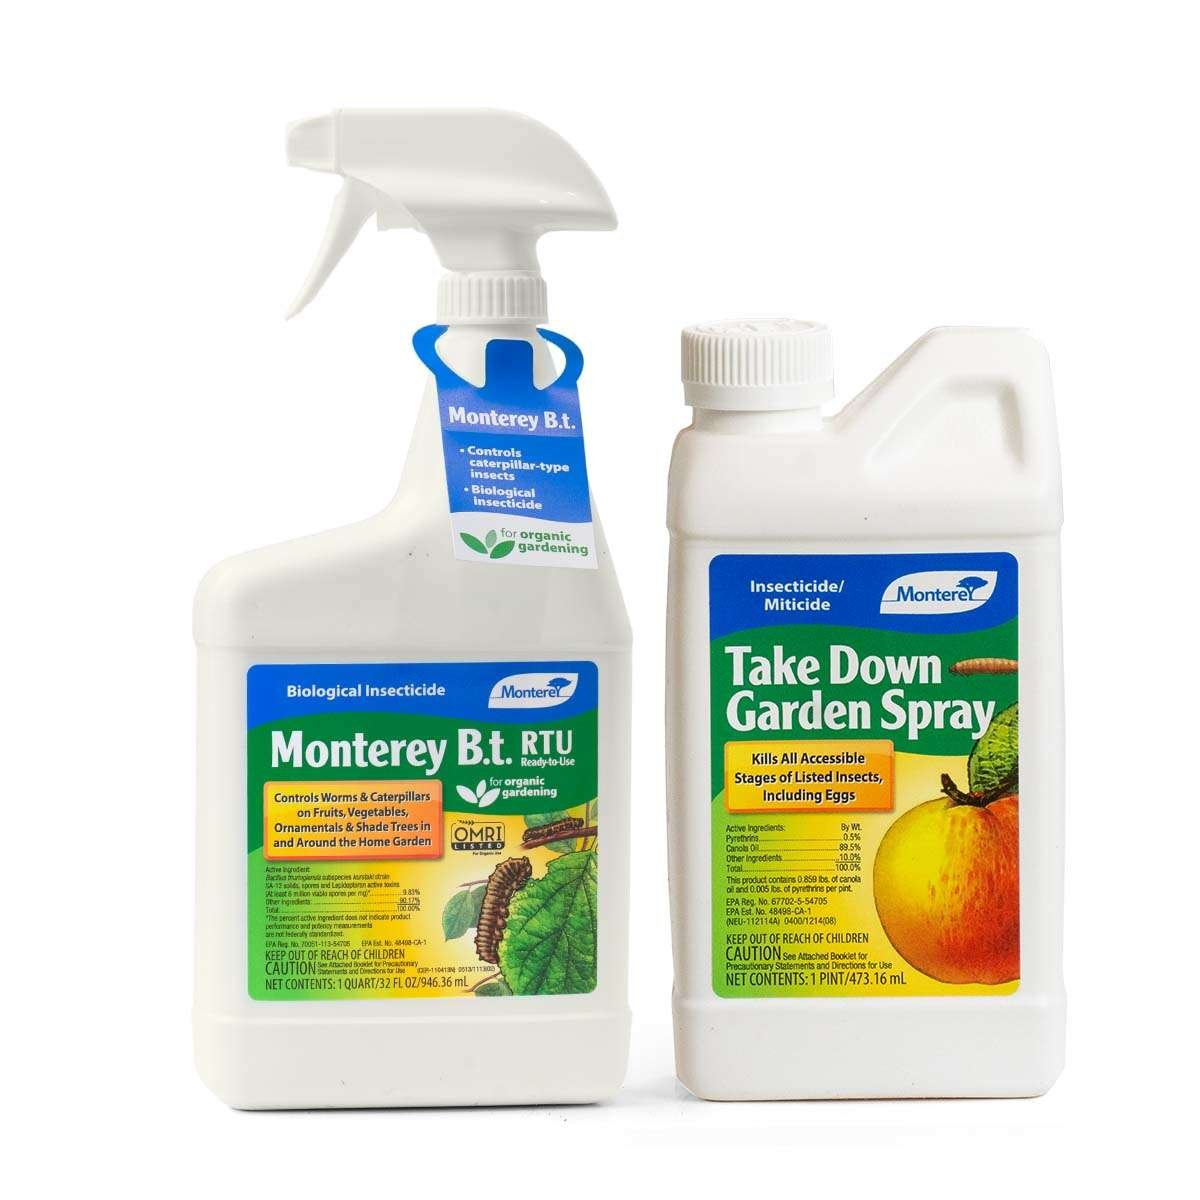 Monterey B.t. and Take Down Garden Spray